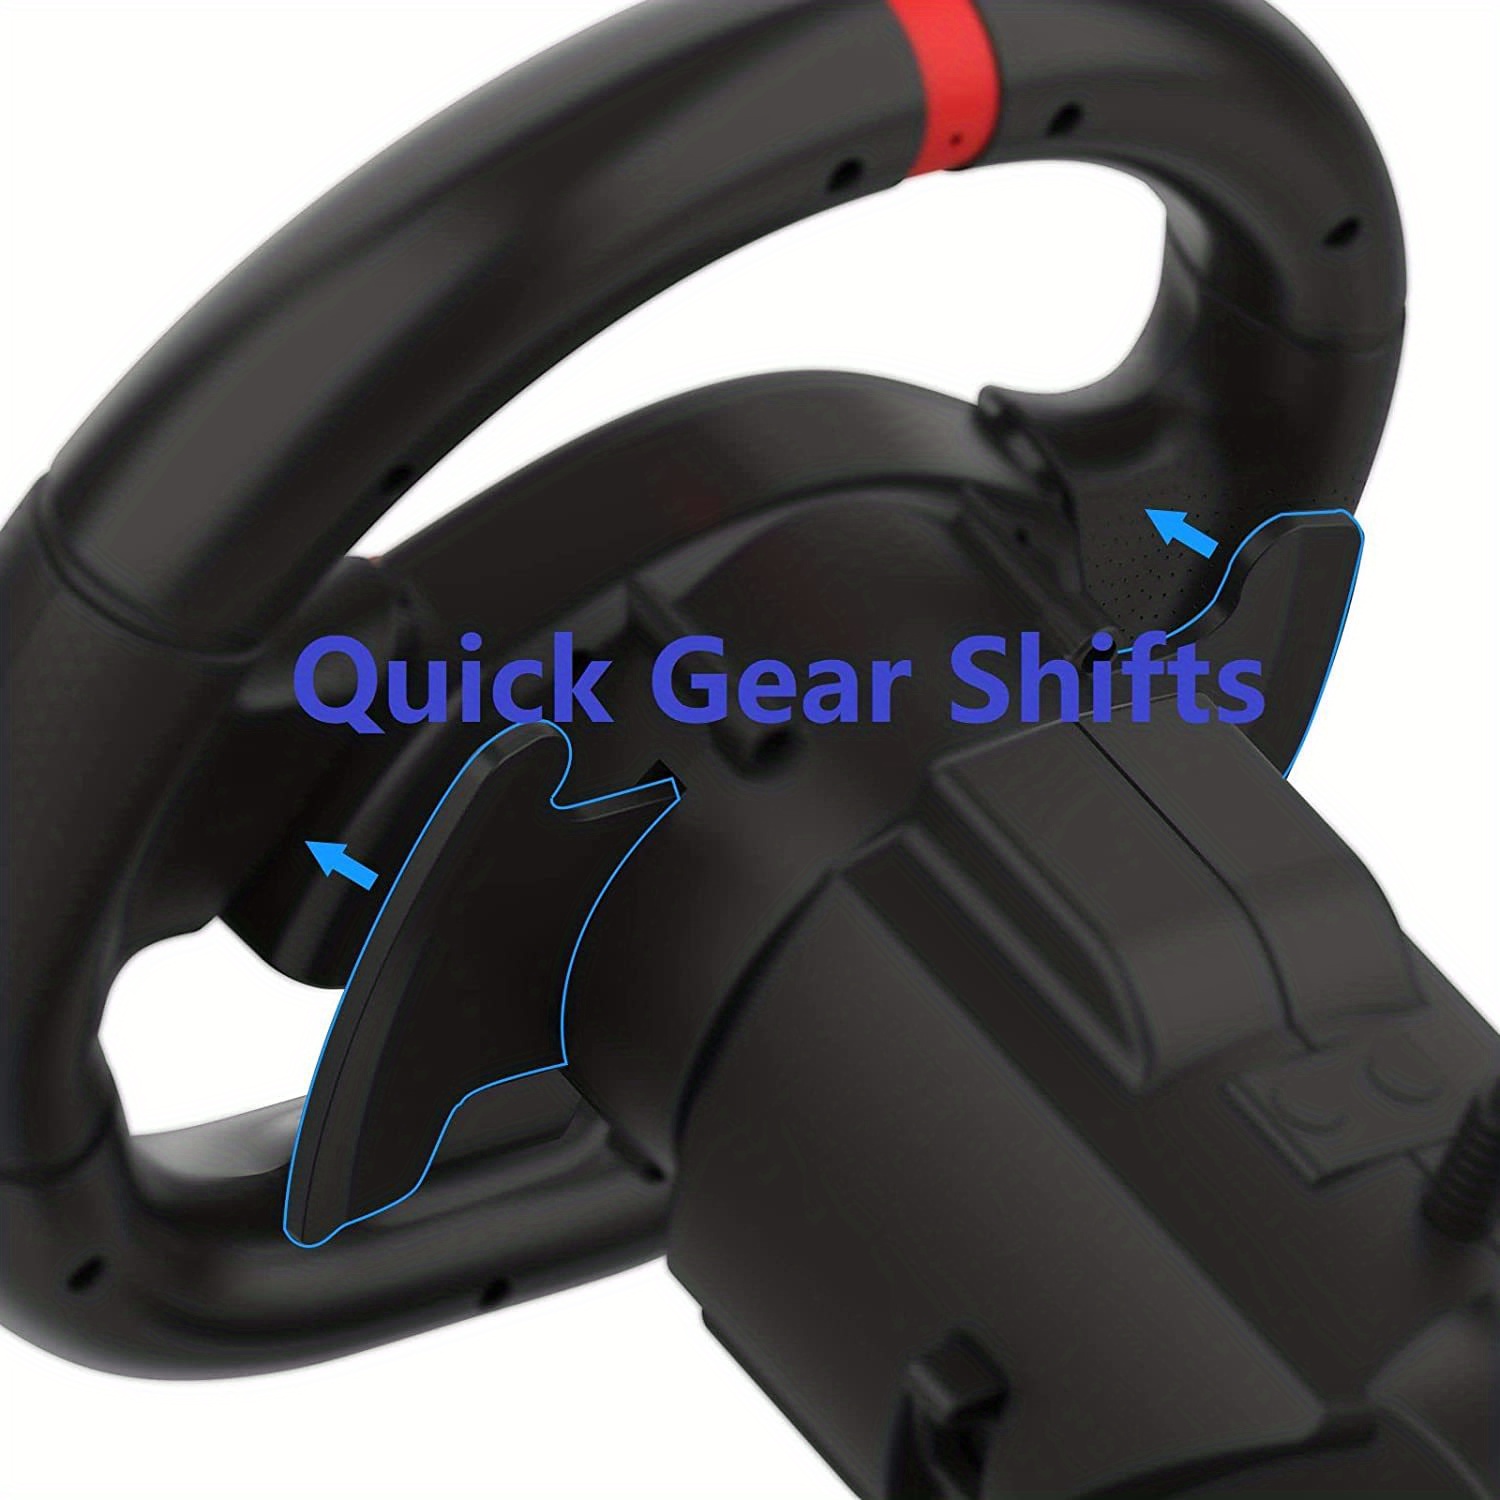 Volante de Jogo, Giratório 180 ° Feedback de Vibração Real Programável USB  Volante de Jogo de Corrida Com Pedal de Mola, Plug and Play para PS4, para